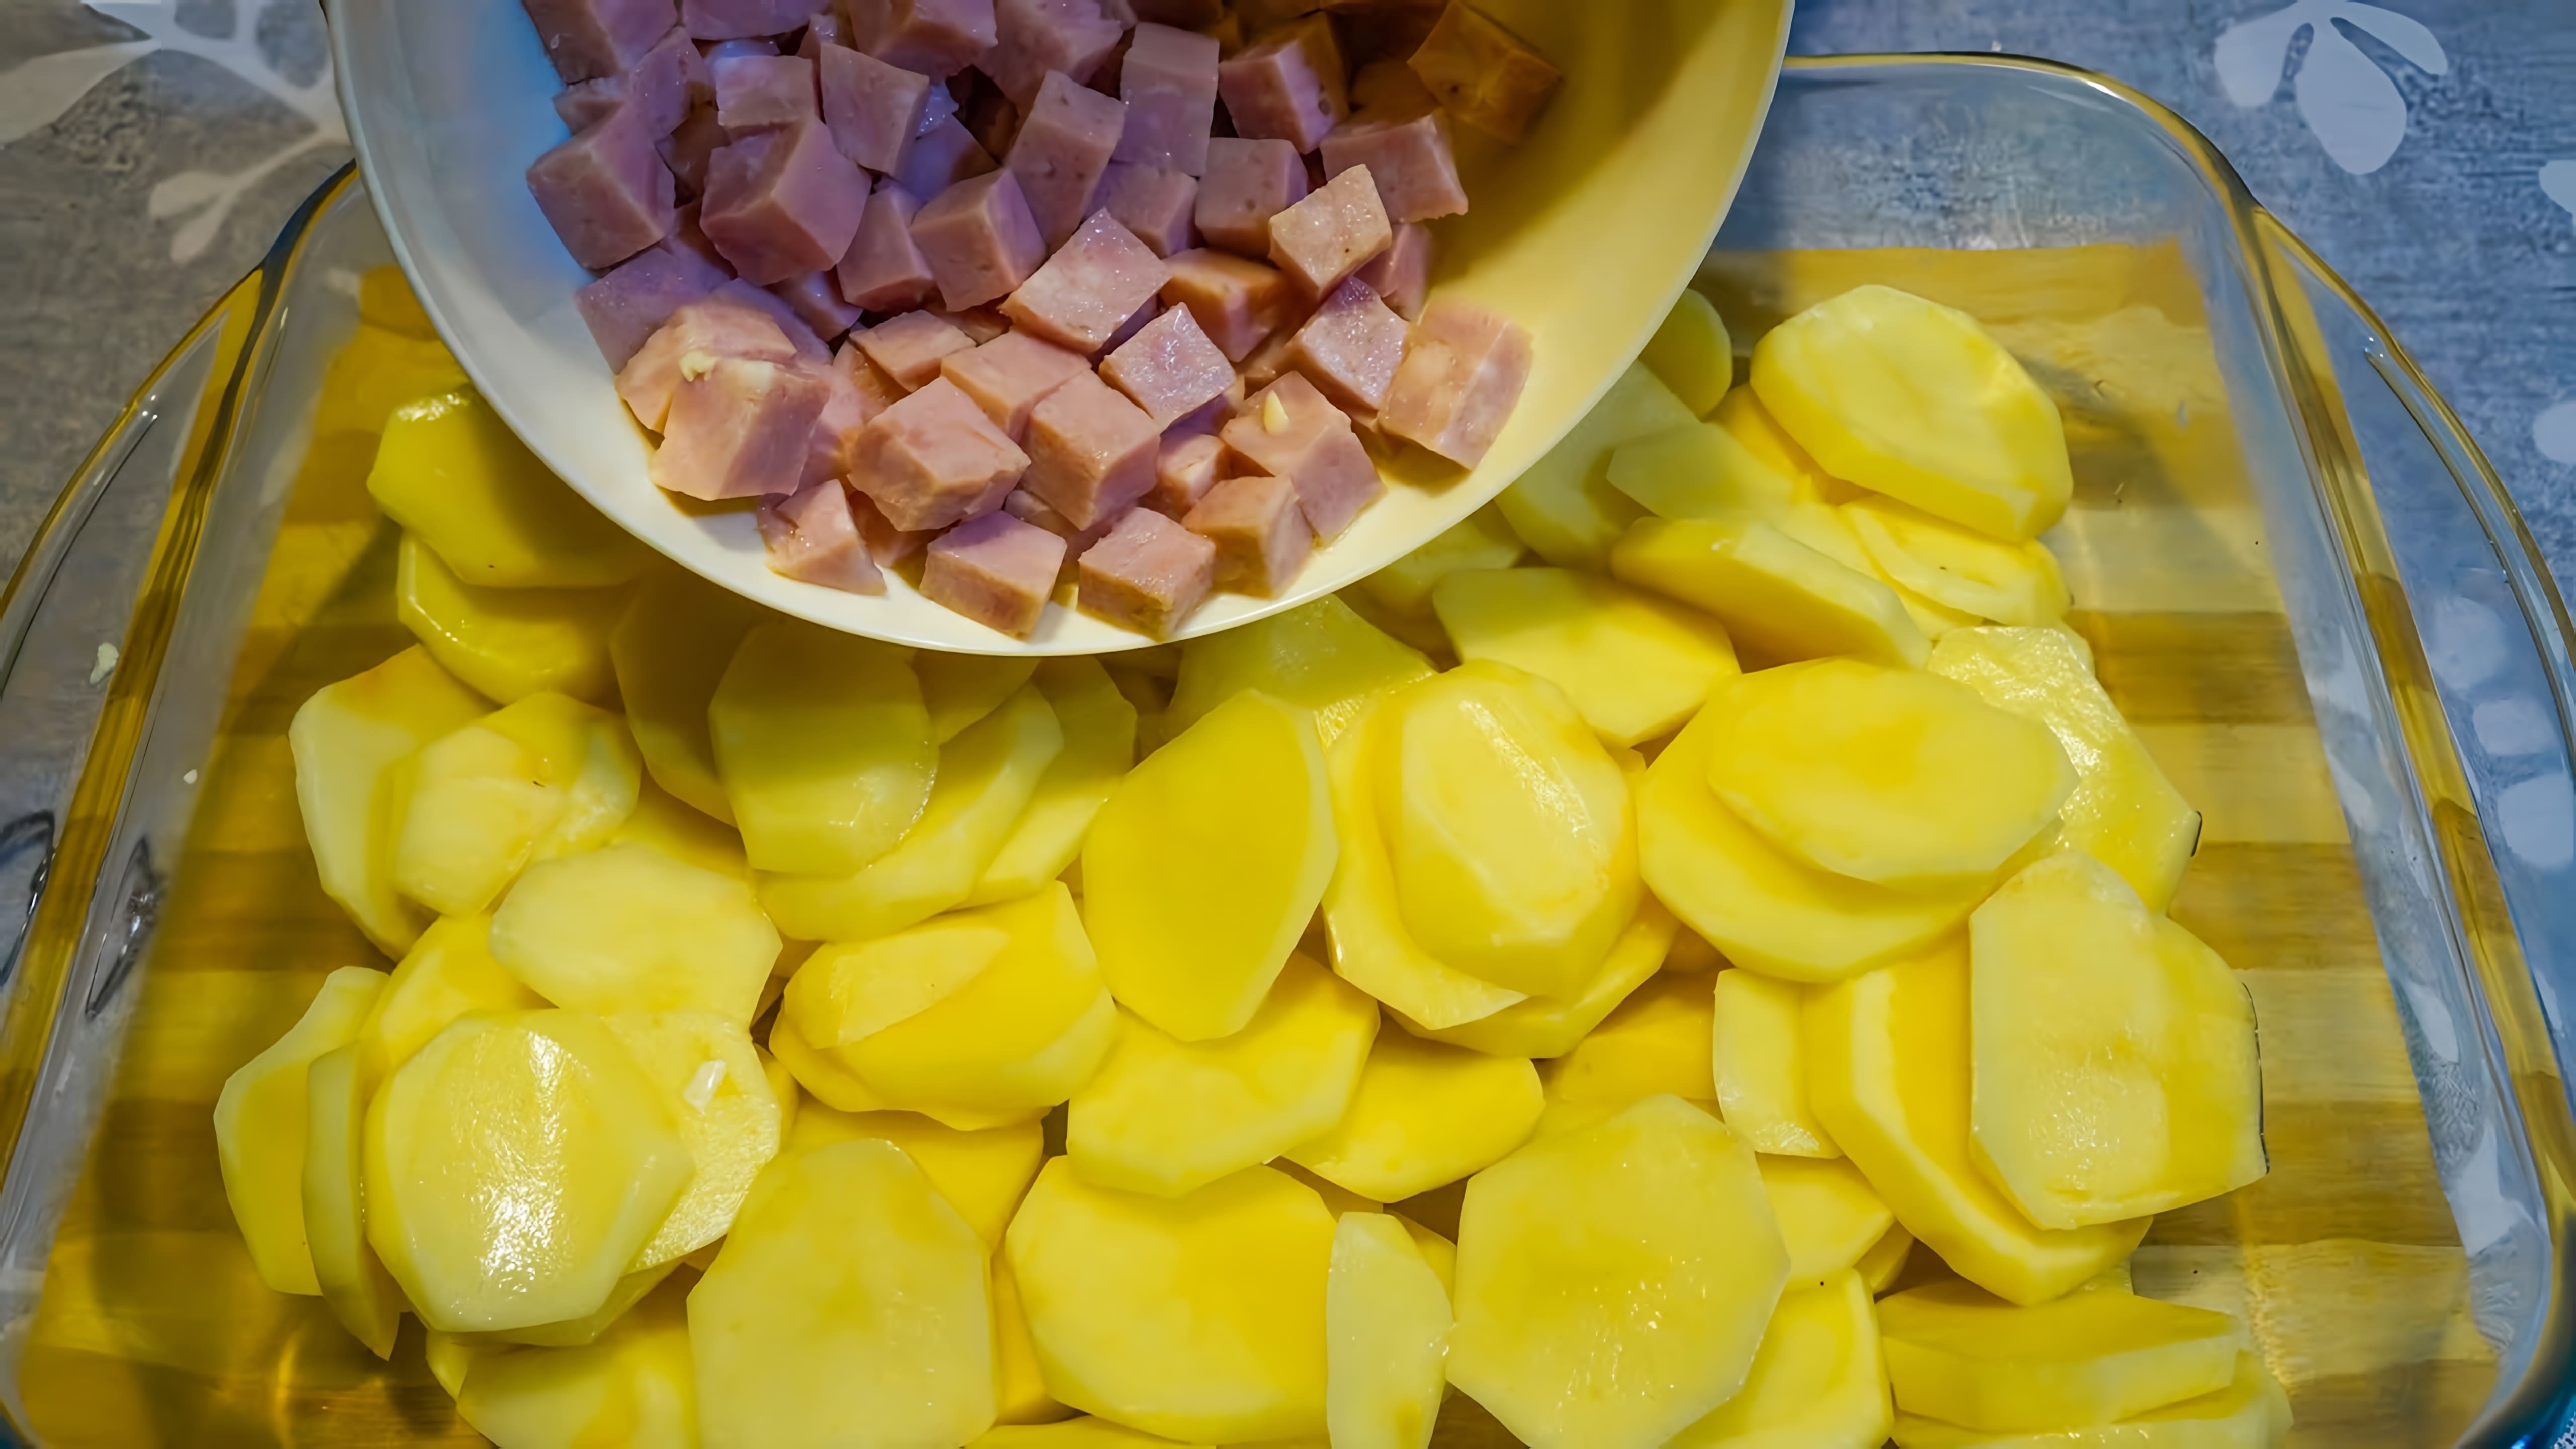 В этом видео демонстрируется рецепт приготовления "солидного" ужина из простых продуктов, таких как картошка и колбаса